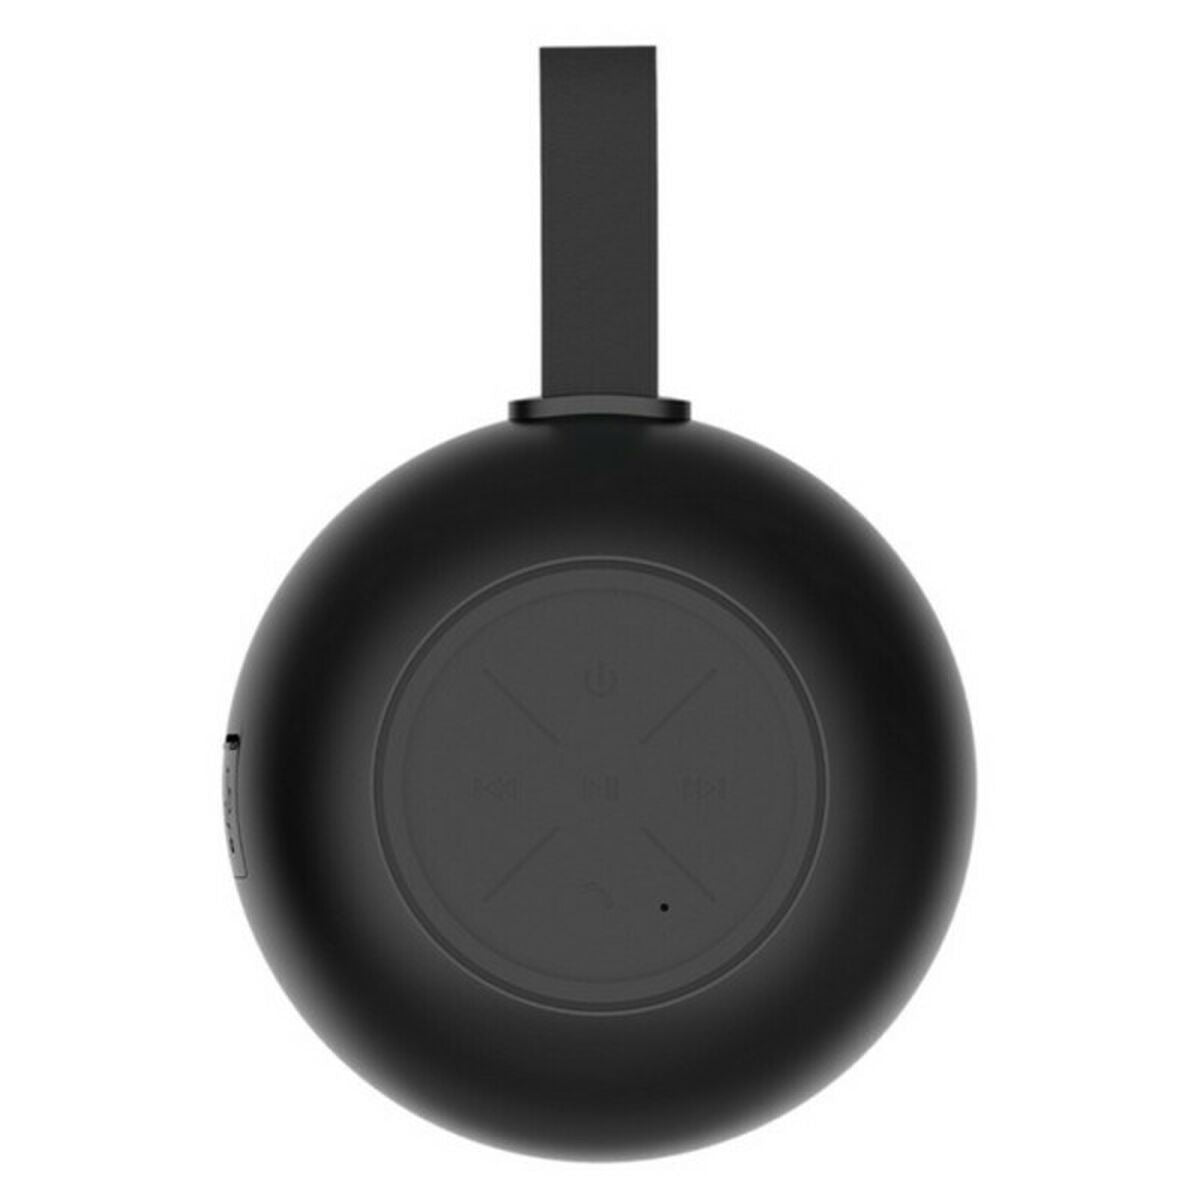 Altoparlante Bluetooth Hiditec Urban Rok S IPX5 3W Colore:Nero - Disponibile in 3-4 giorni lavorativi